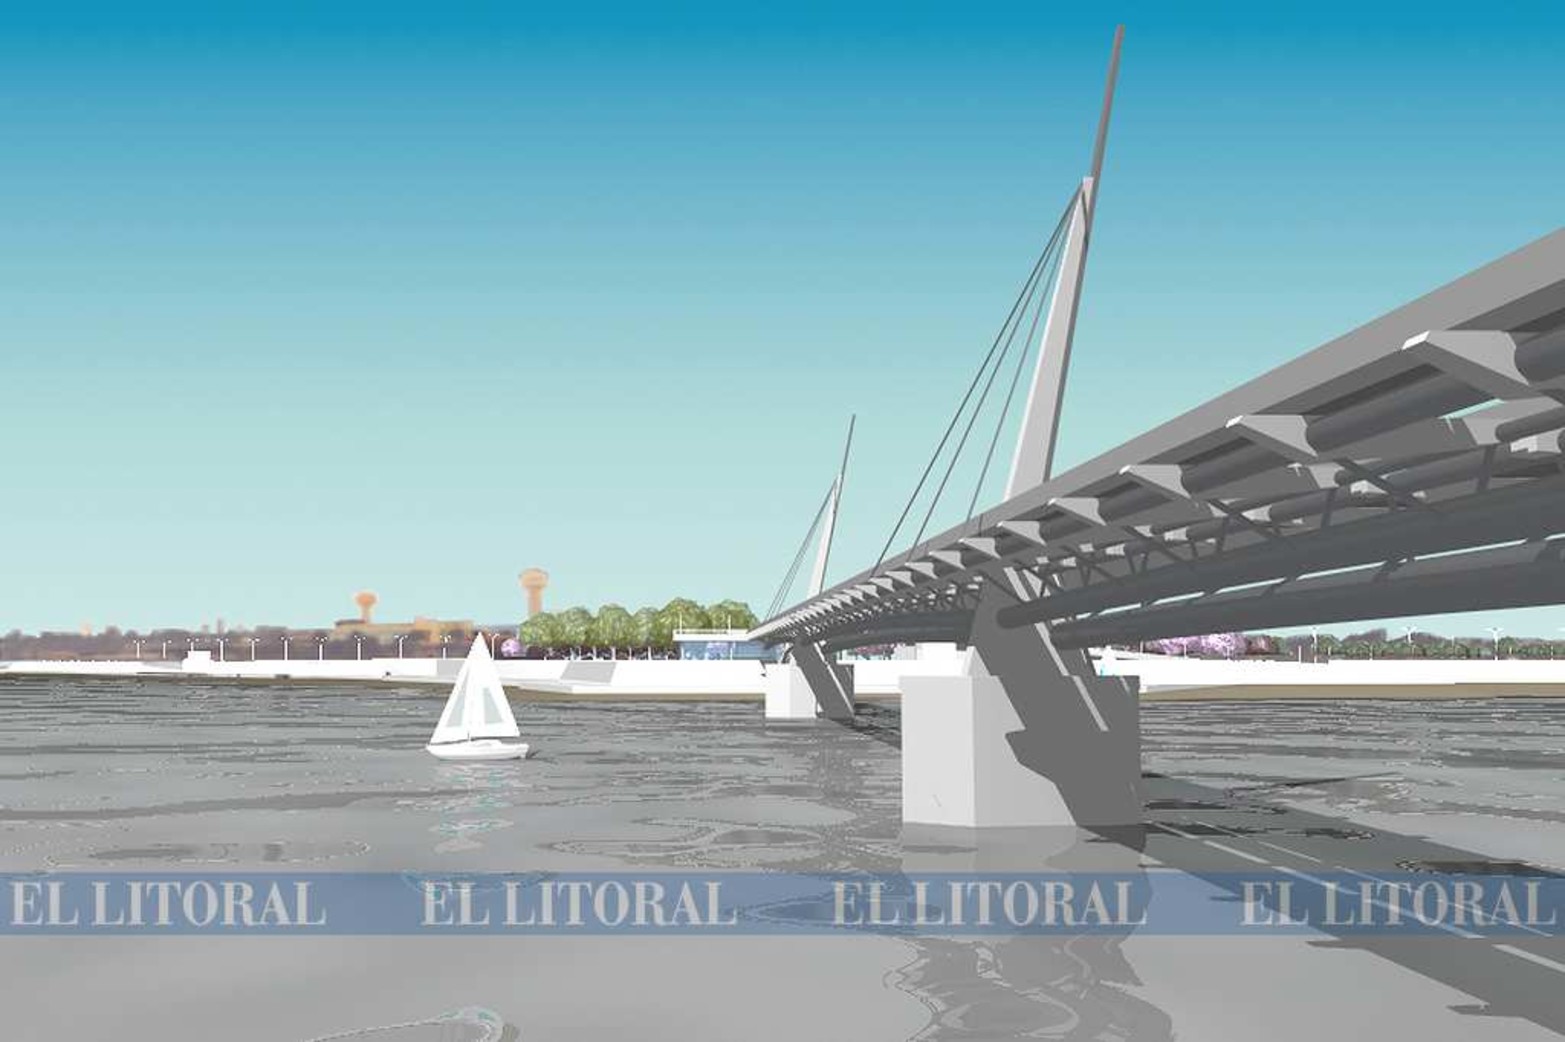 Puente peatonal o fuentes. Los dos primeros premios del concurso Homenaje al tercer milenio, que organizó el municipio hace 18 años (2000) fueron el puente peatonal y los chorros de agua.